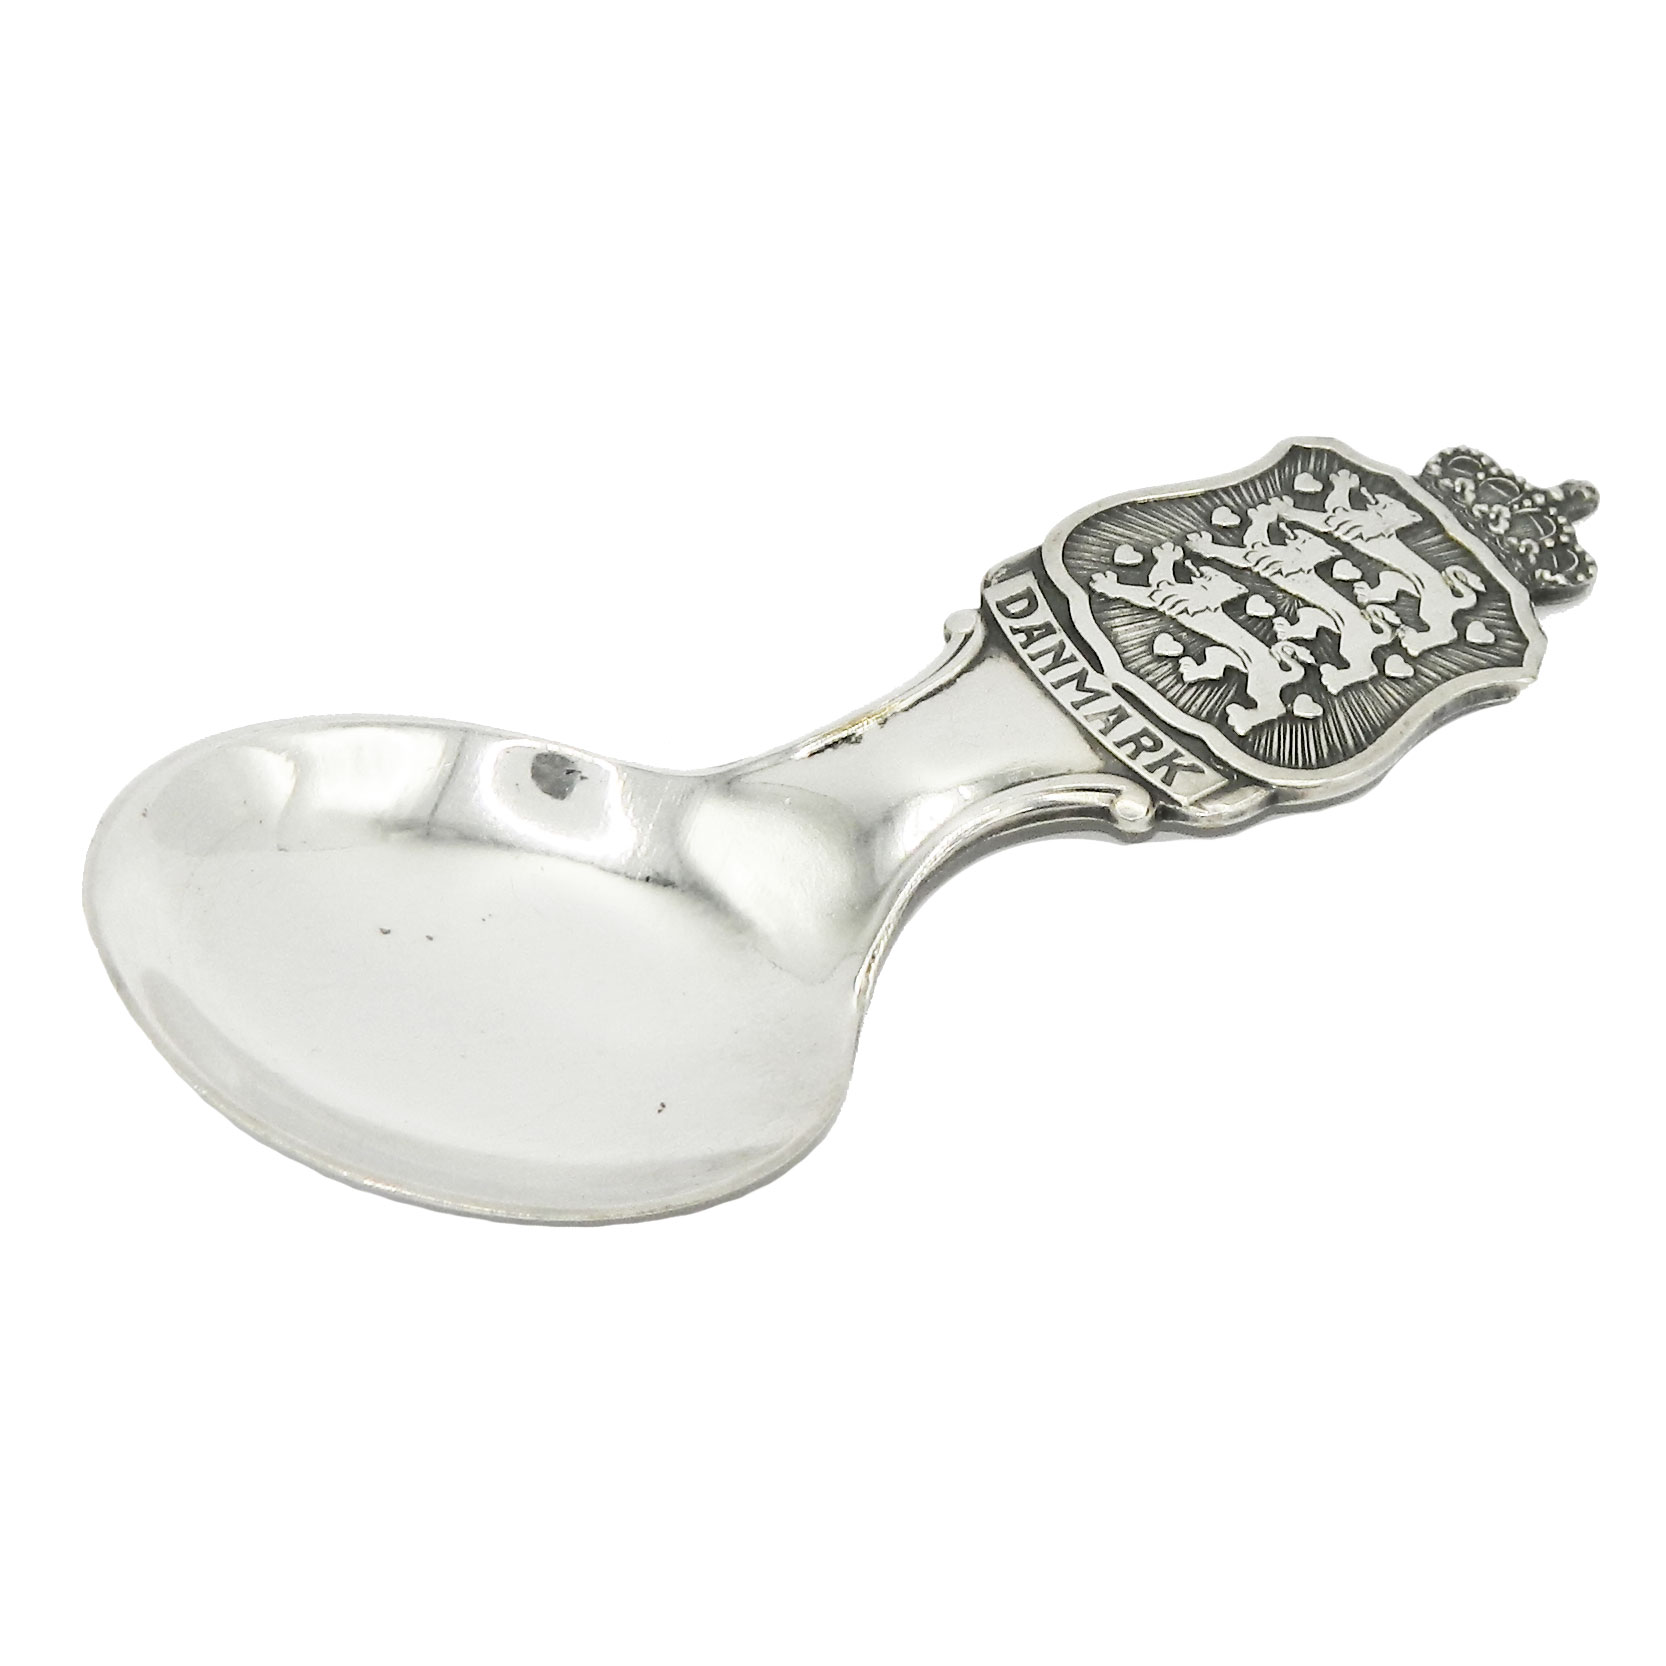 Denmark souvenir sugar spoon